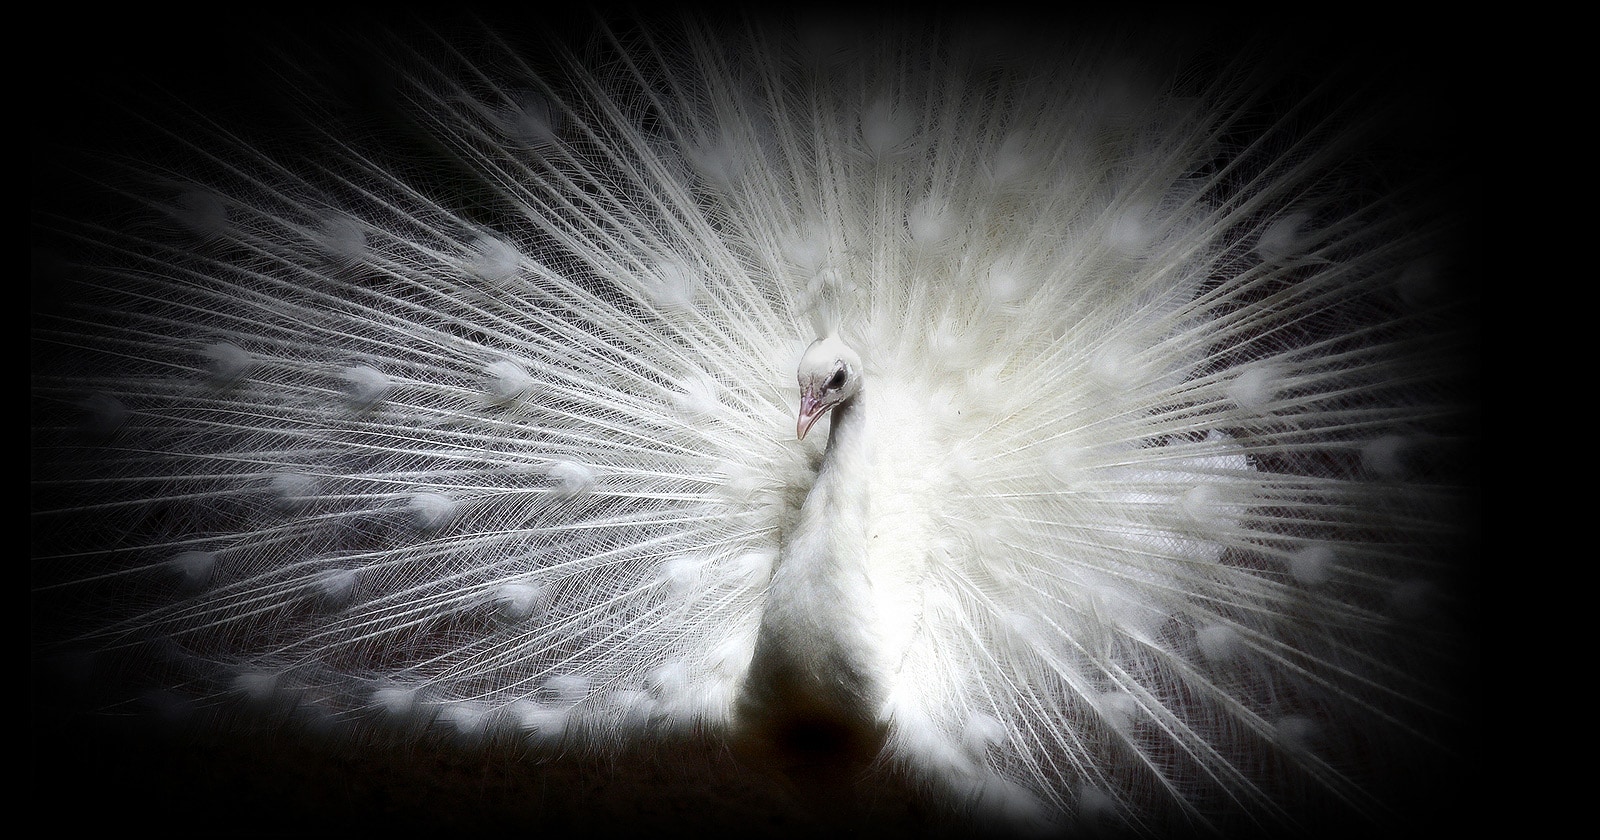 Una imagen de un pavo real blanco contra un fondo negro, en una pantalla LG OLED evo muestra claramente el detalle de cada pluma.